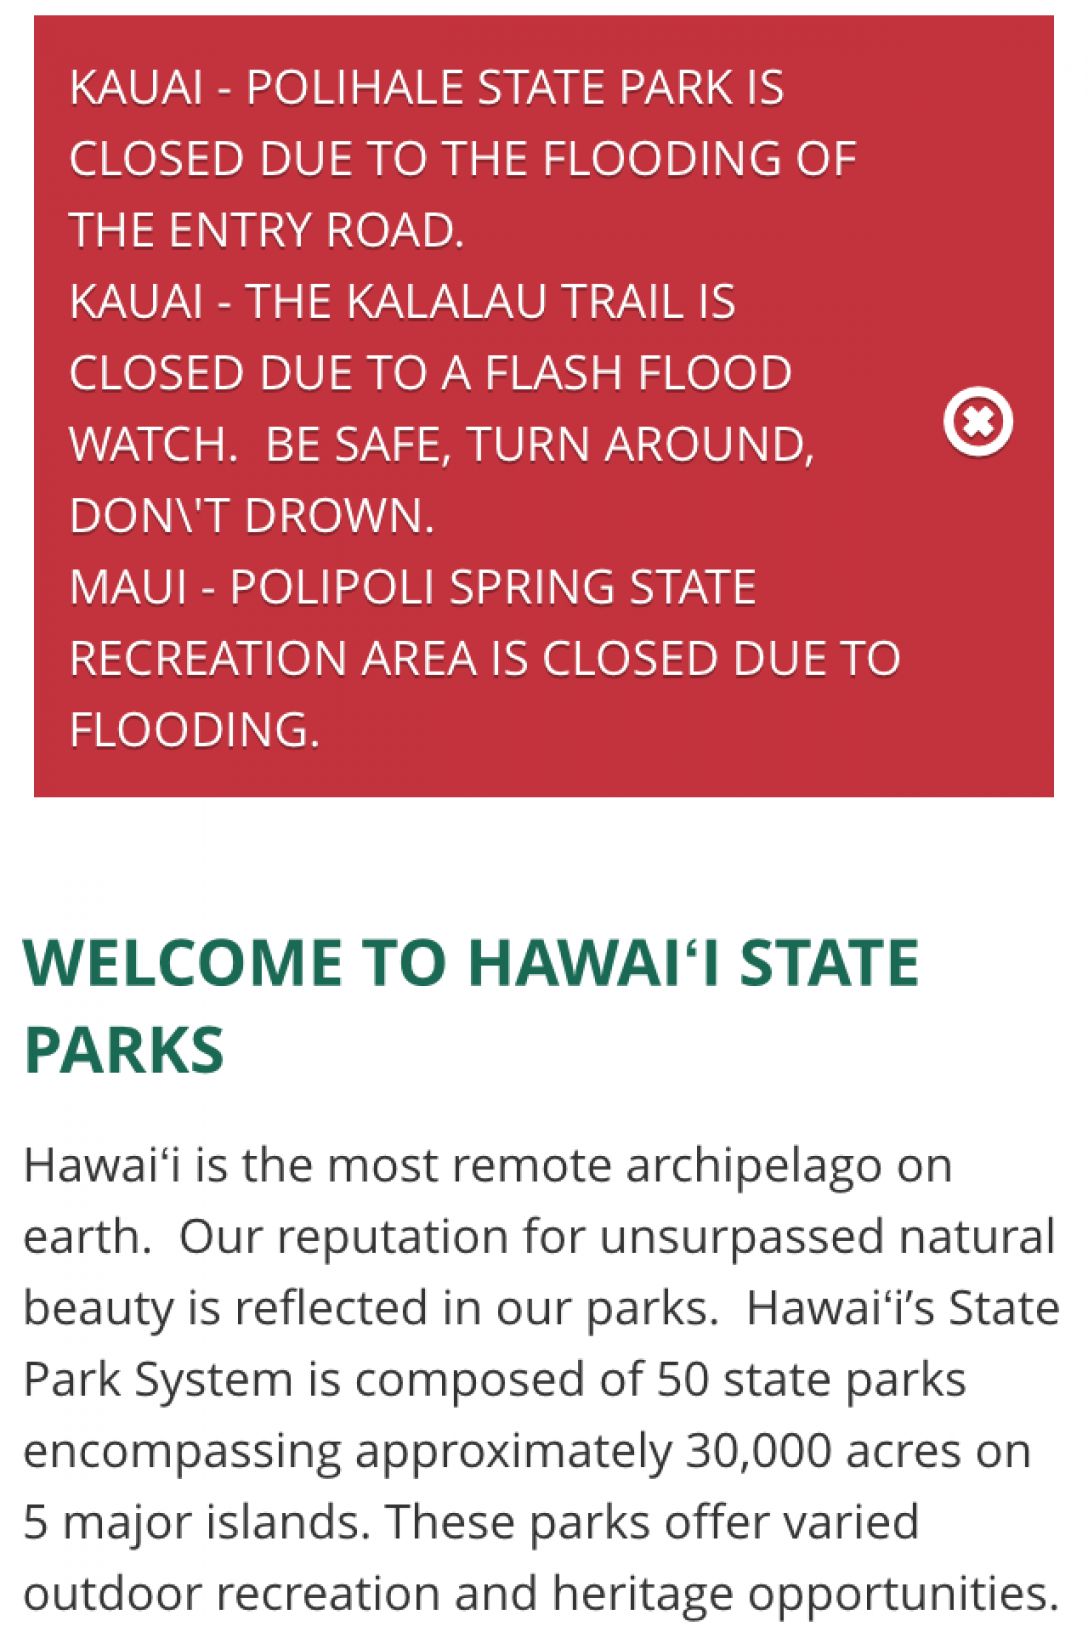 Kalalau Trail closure message on dlnr.hawaii.gov